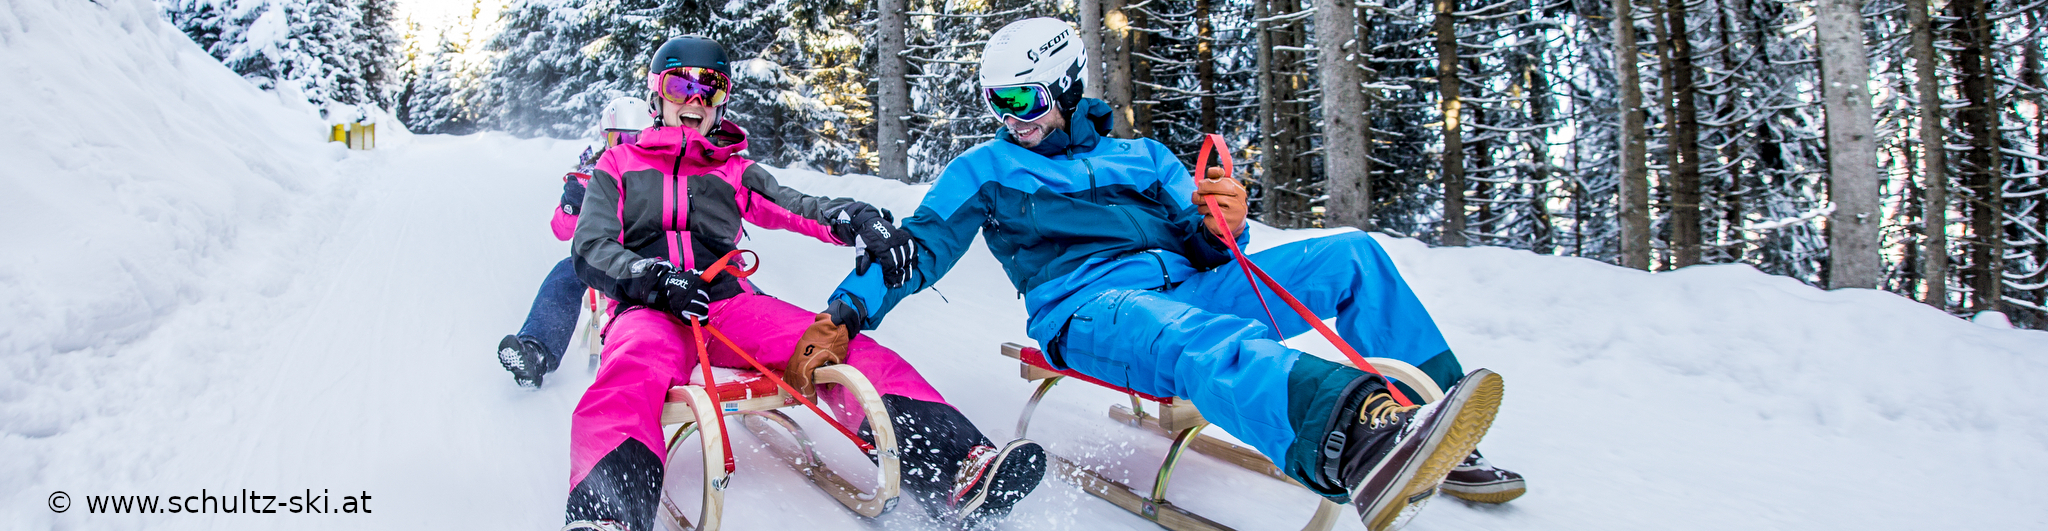 ZILLERTAL – verlängertes Skiwochenende mit 4 Skitagen – in den Weihnachtsferien – Hotel in Strass 